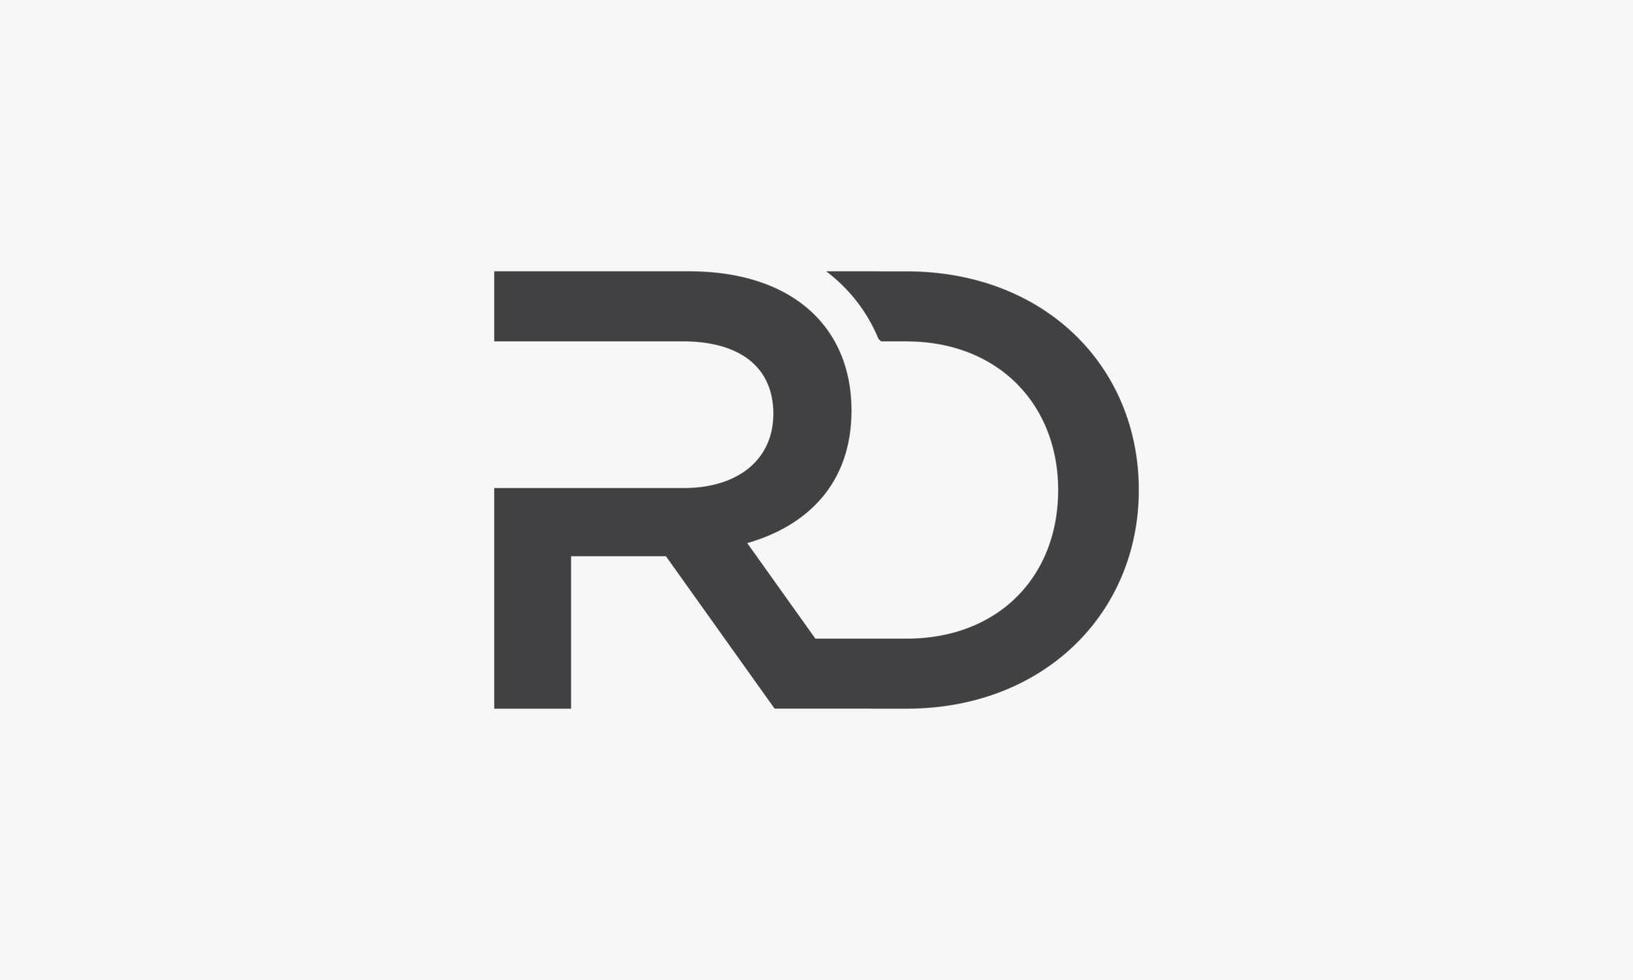 logo della lettera rd isolato su priorità bassa bianca. vettore